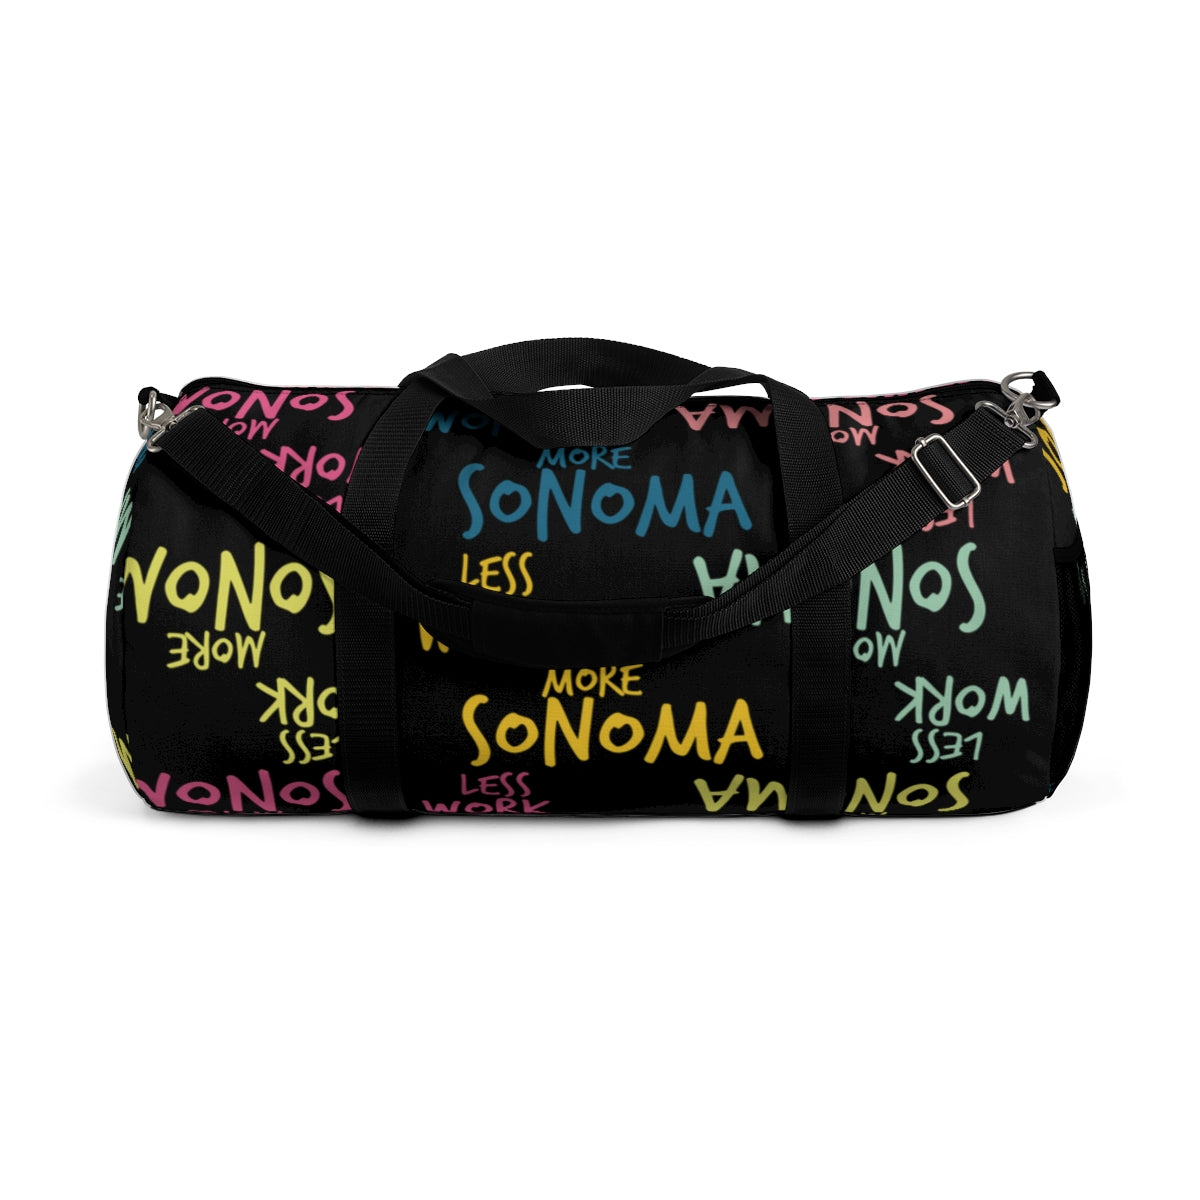 Less Work™ More Sonoma Duffel Bag